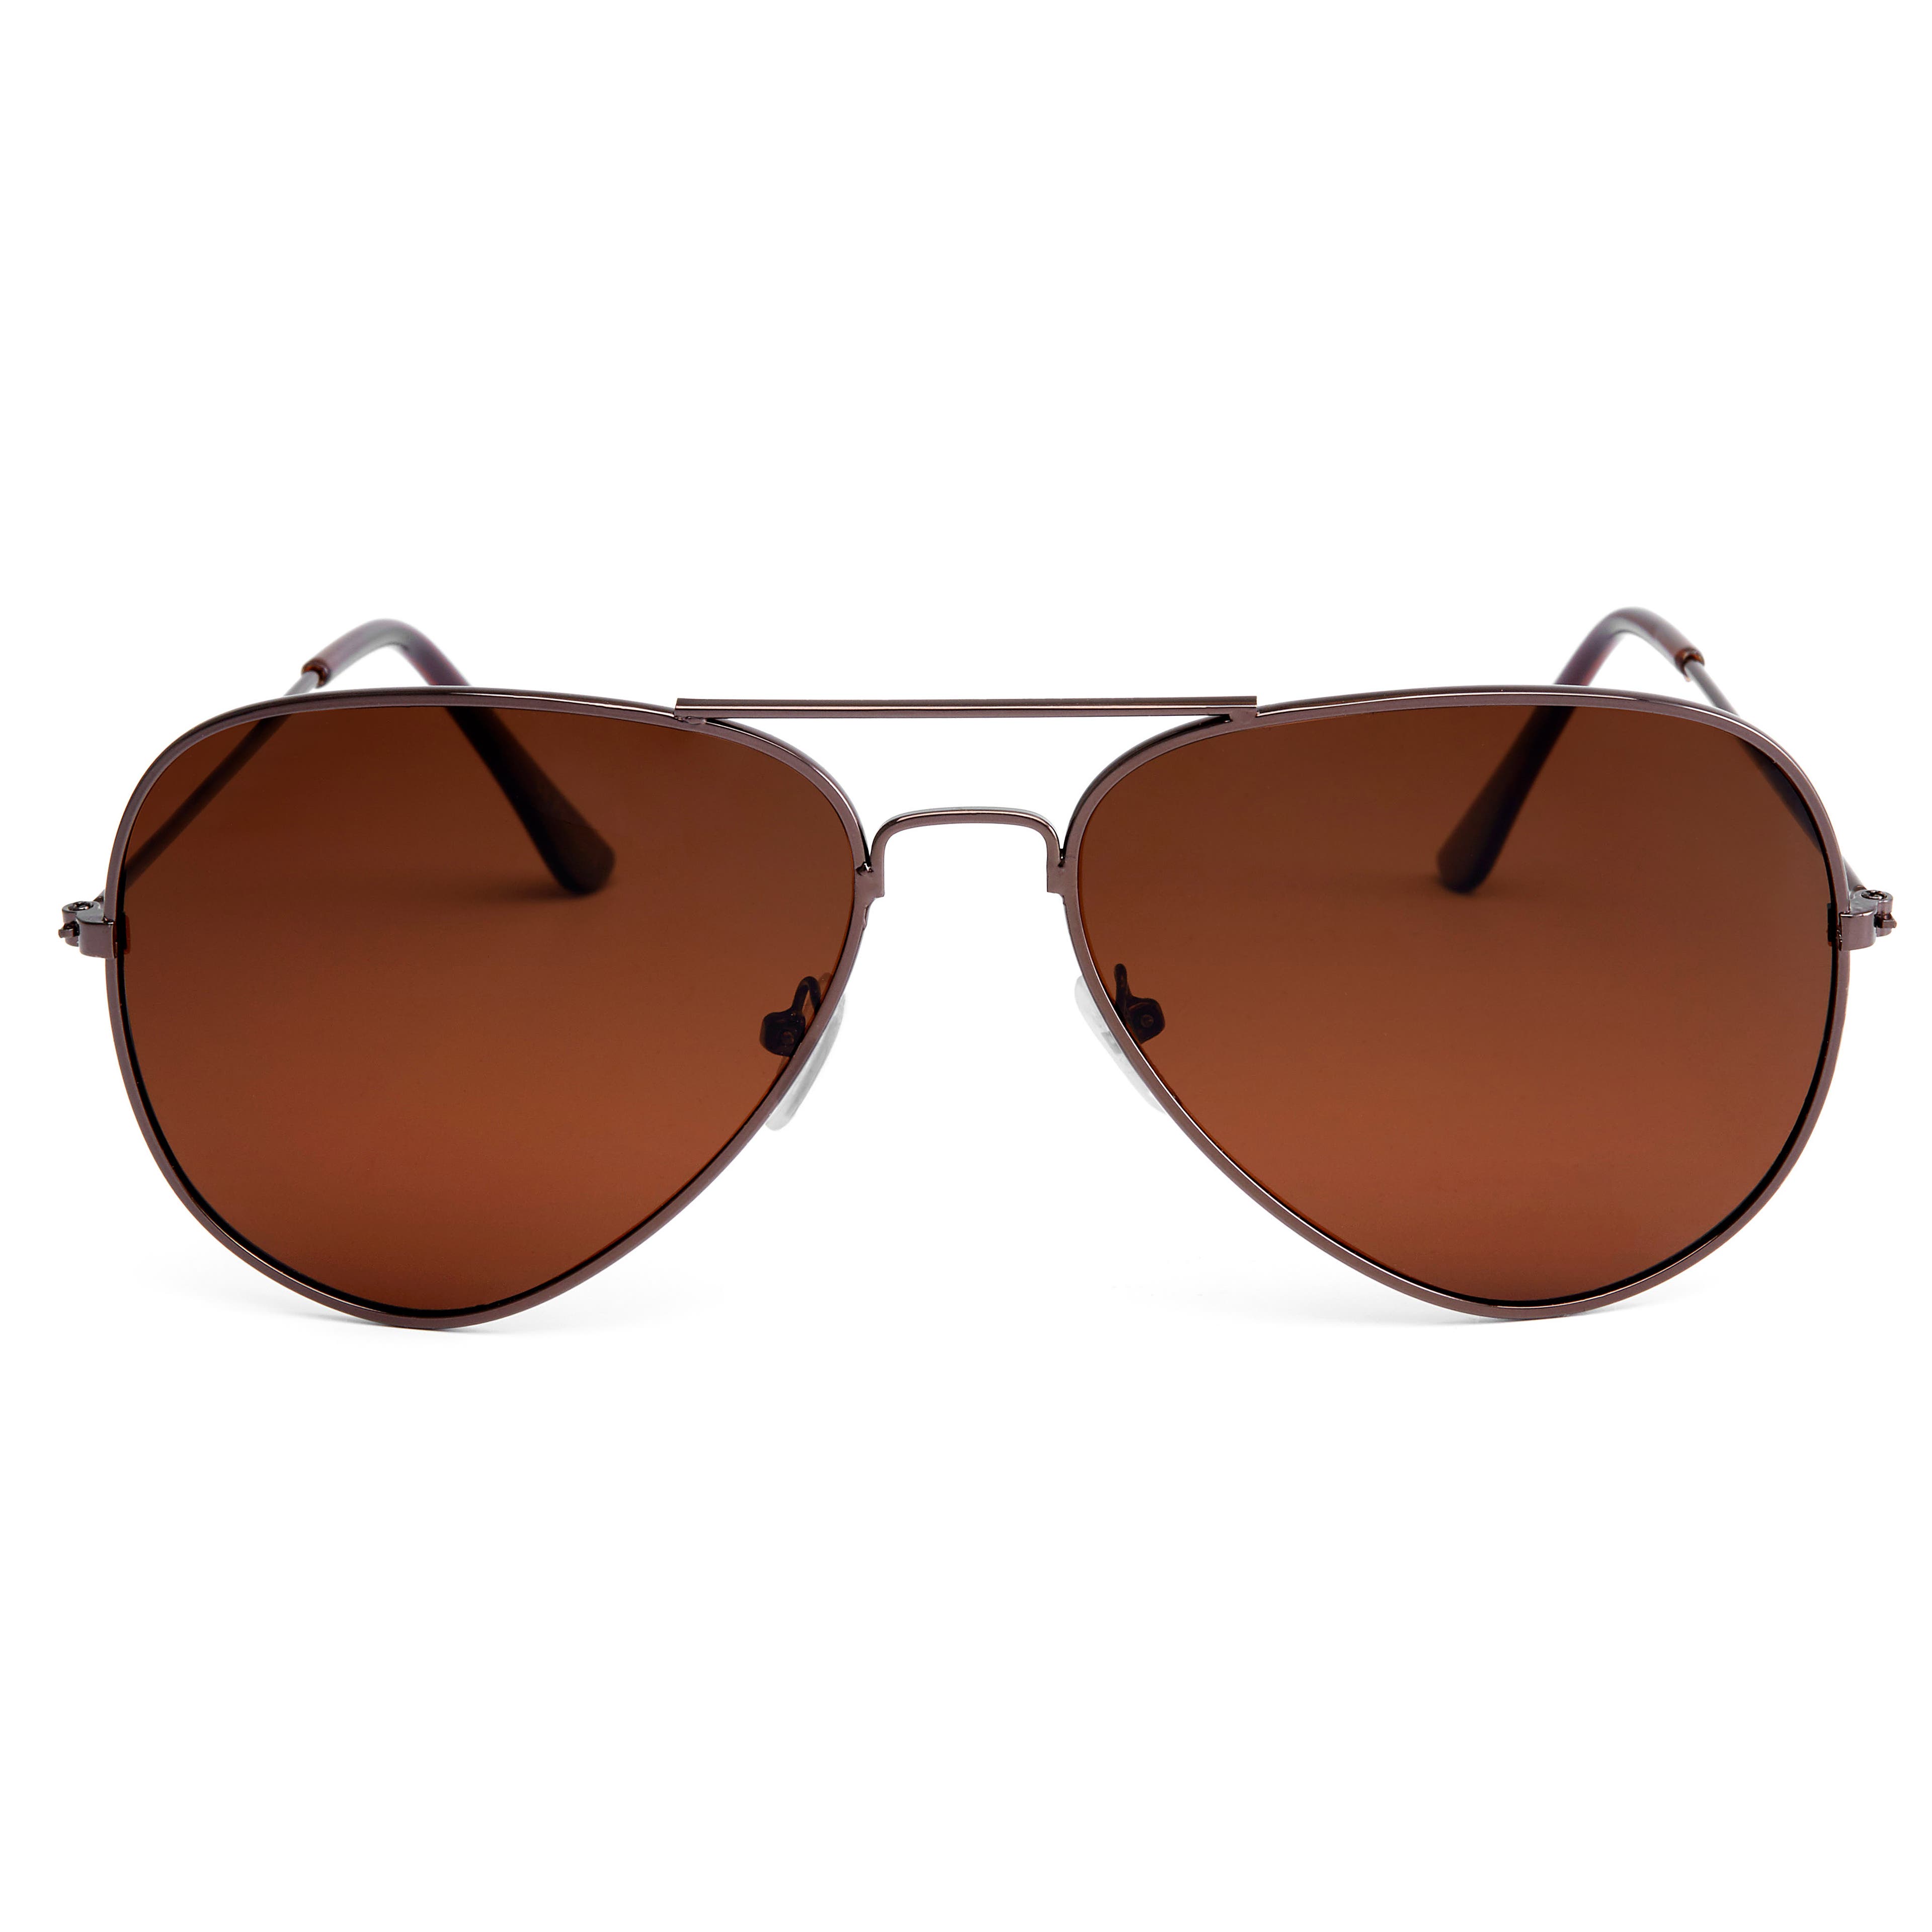 Men's Brown Sunglasses